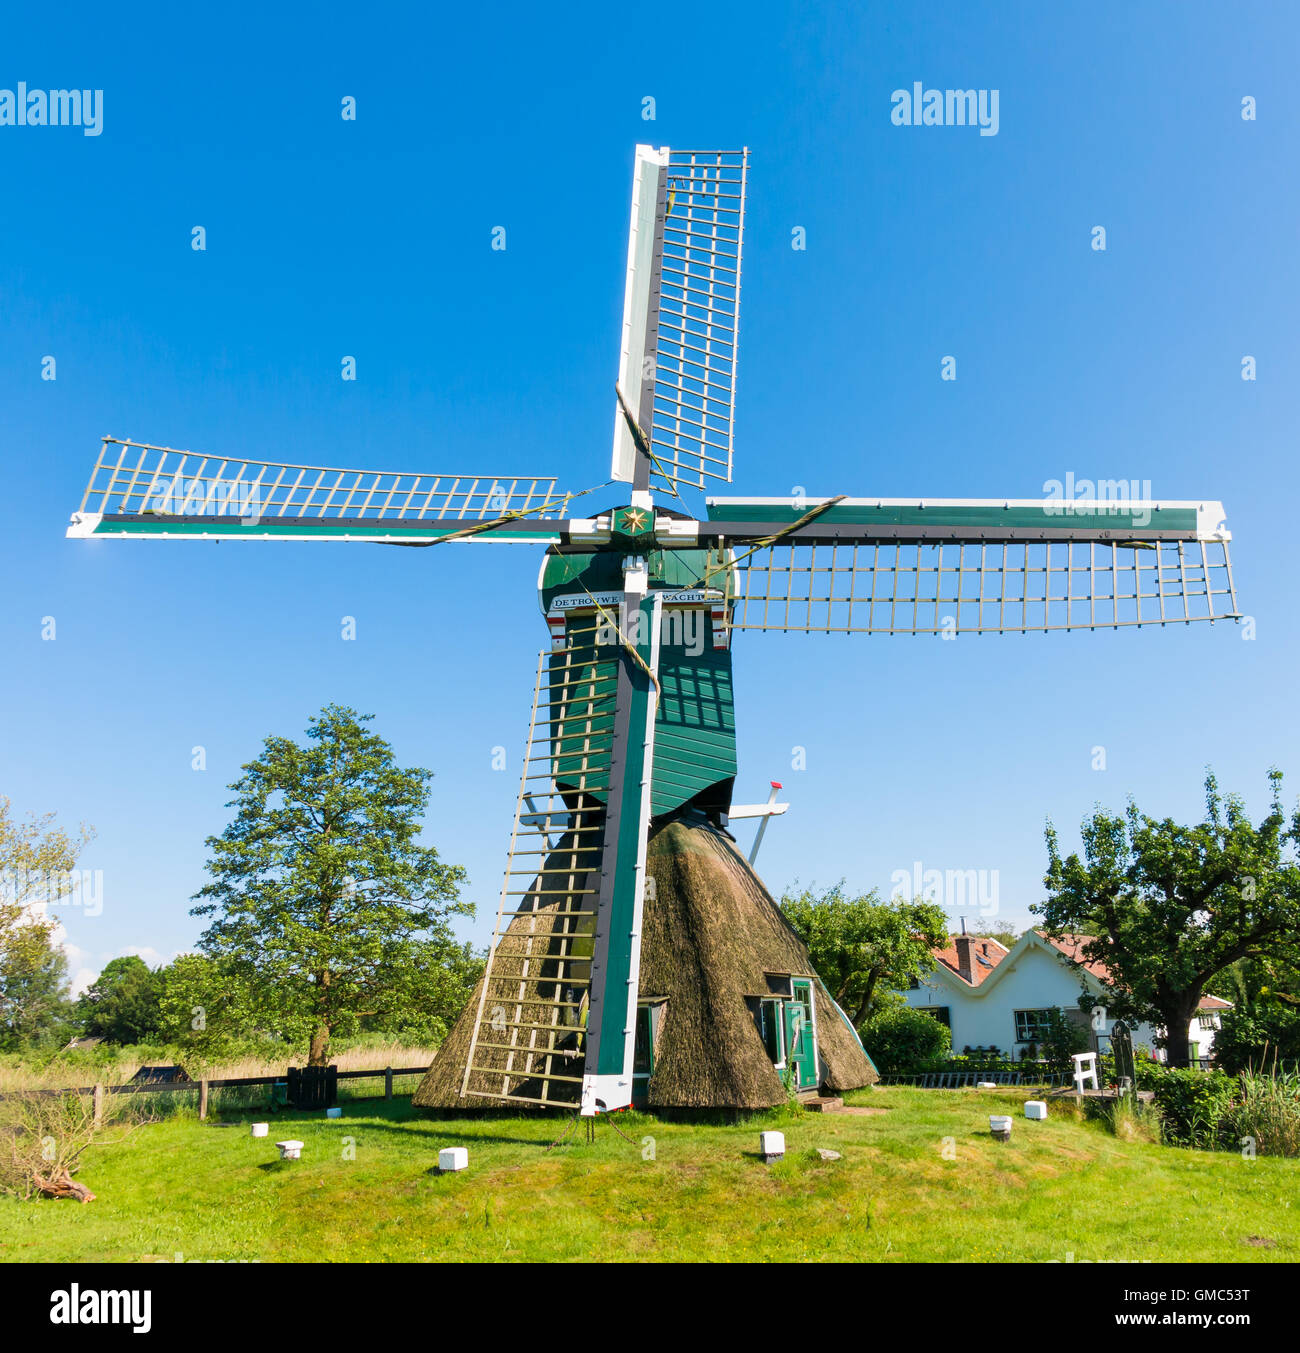 El molino de viento de Trouwe Waghter Pólder, un hueco post mill en Tienhoven en provincia de Utrecht, Países Bajos Foto de stock